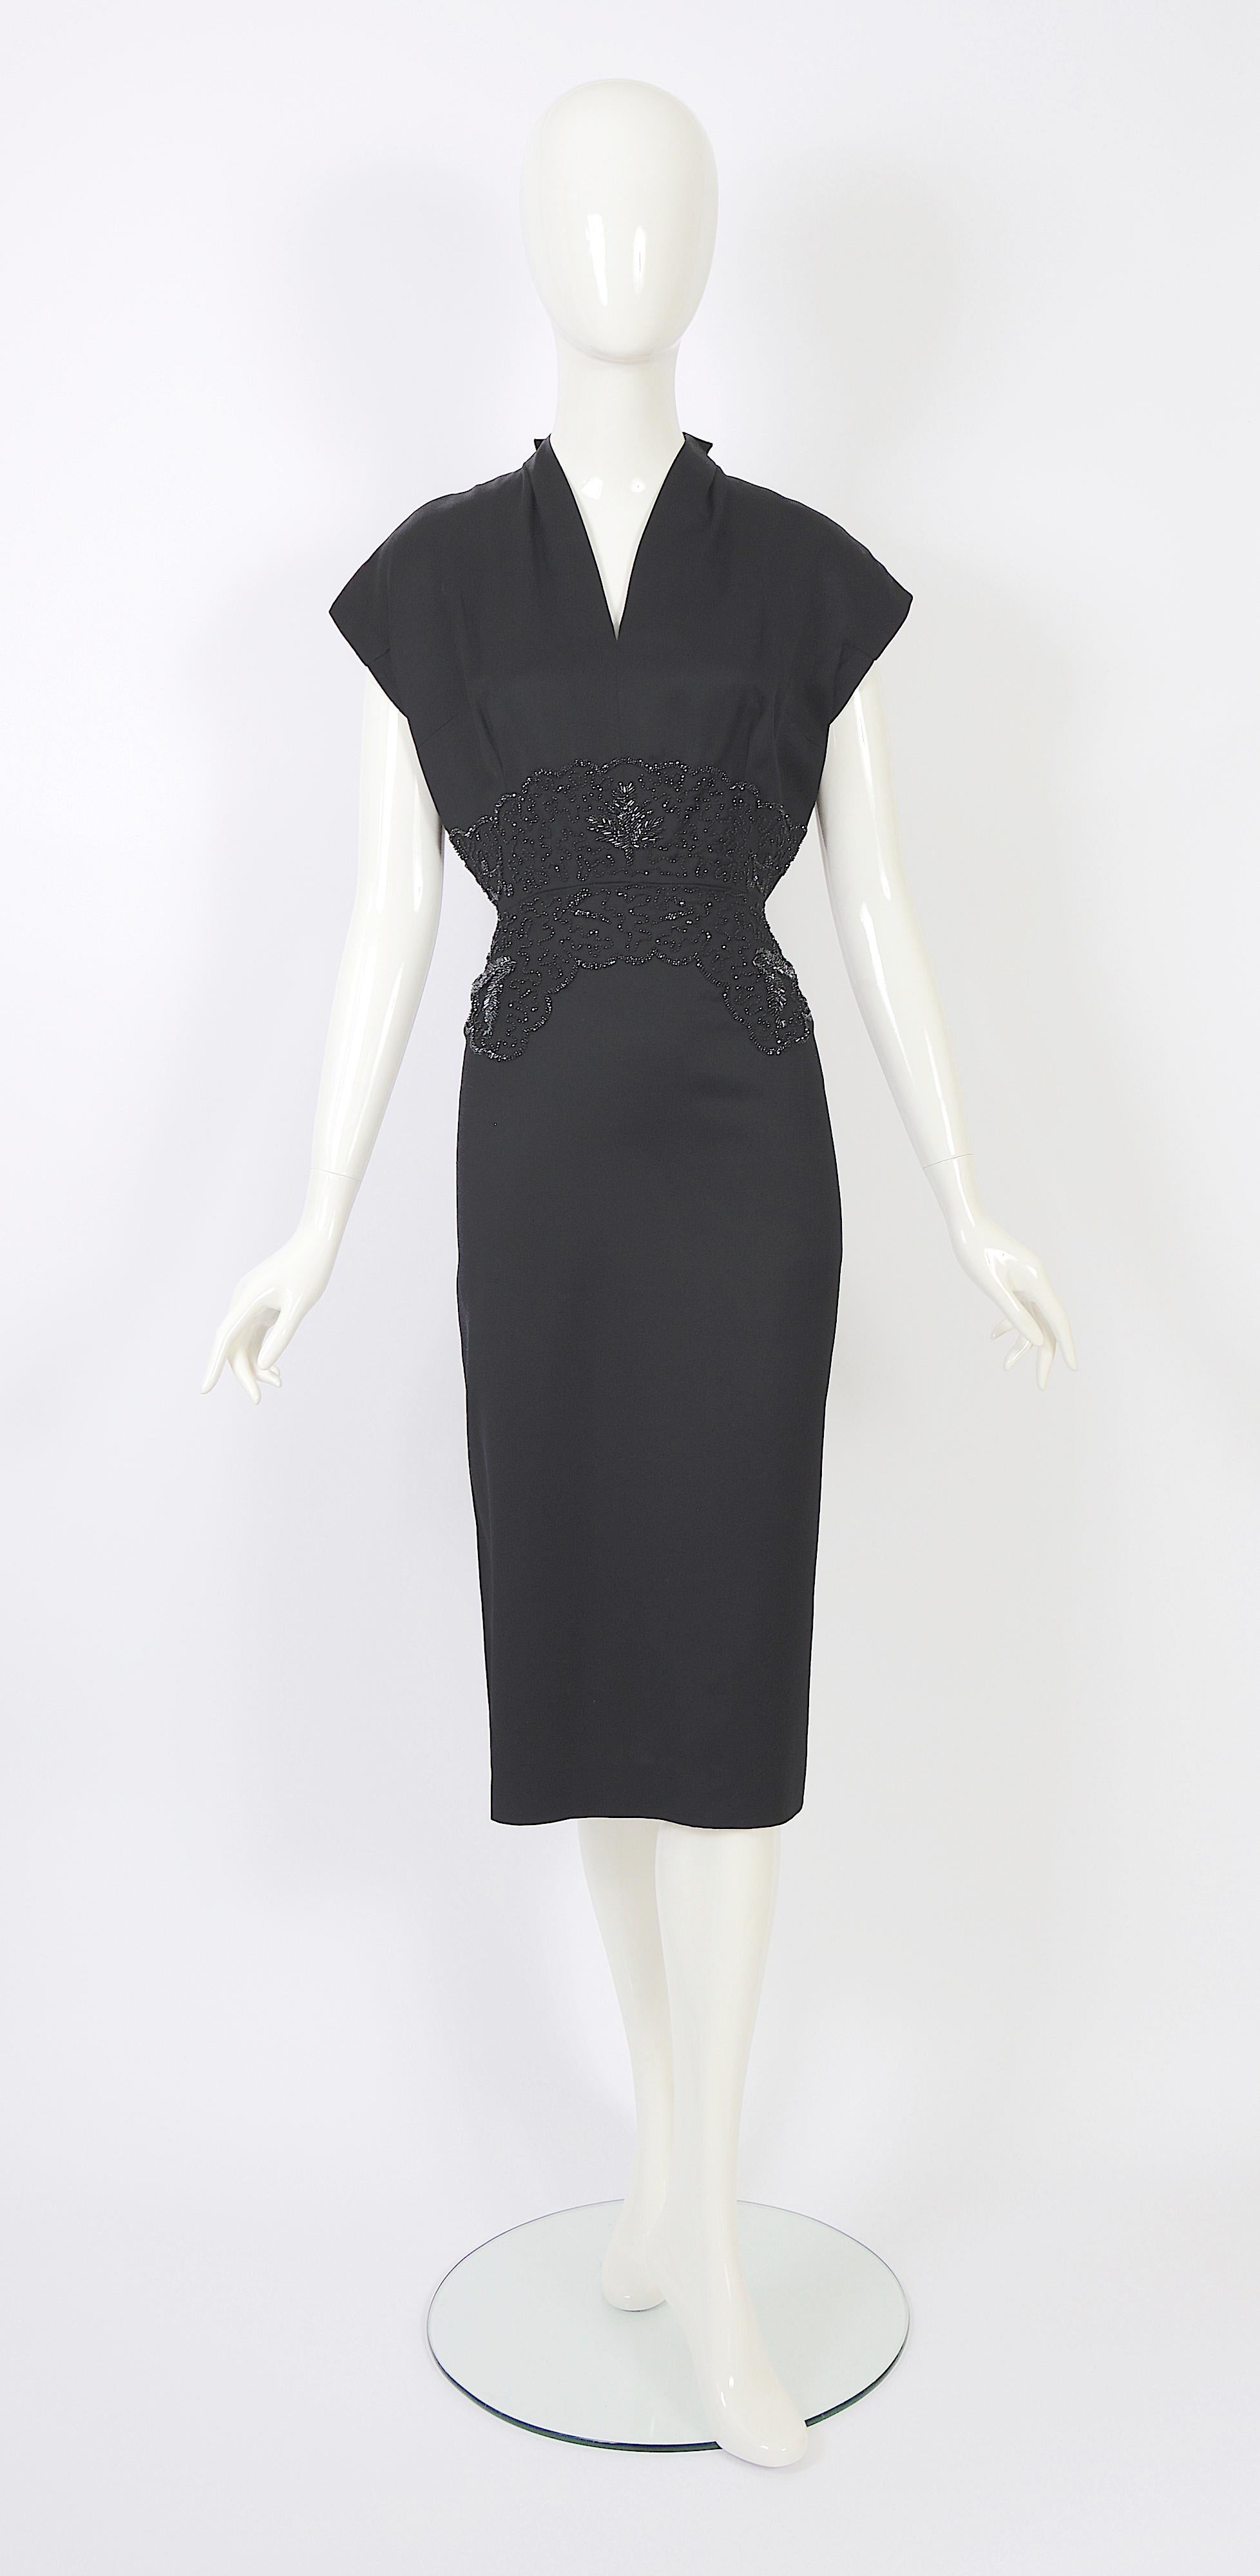 Cette magnifique robe haute couture Lancel des années 1950 présente une taille perlée et est confectionnée dans une laine luxueuse. 
La robe n'est pas doublée, car il était courant à l'époque de porter une robe ou un tailleur de lingerie séparé. 
Il